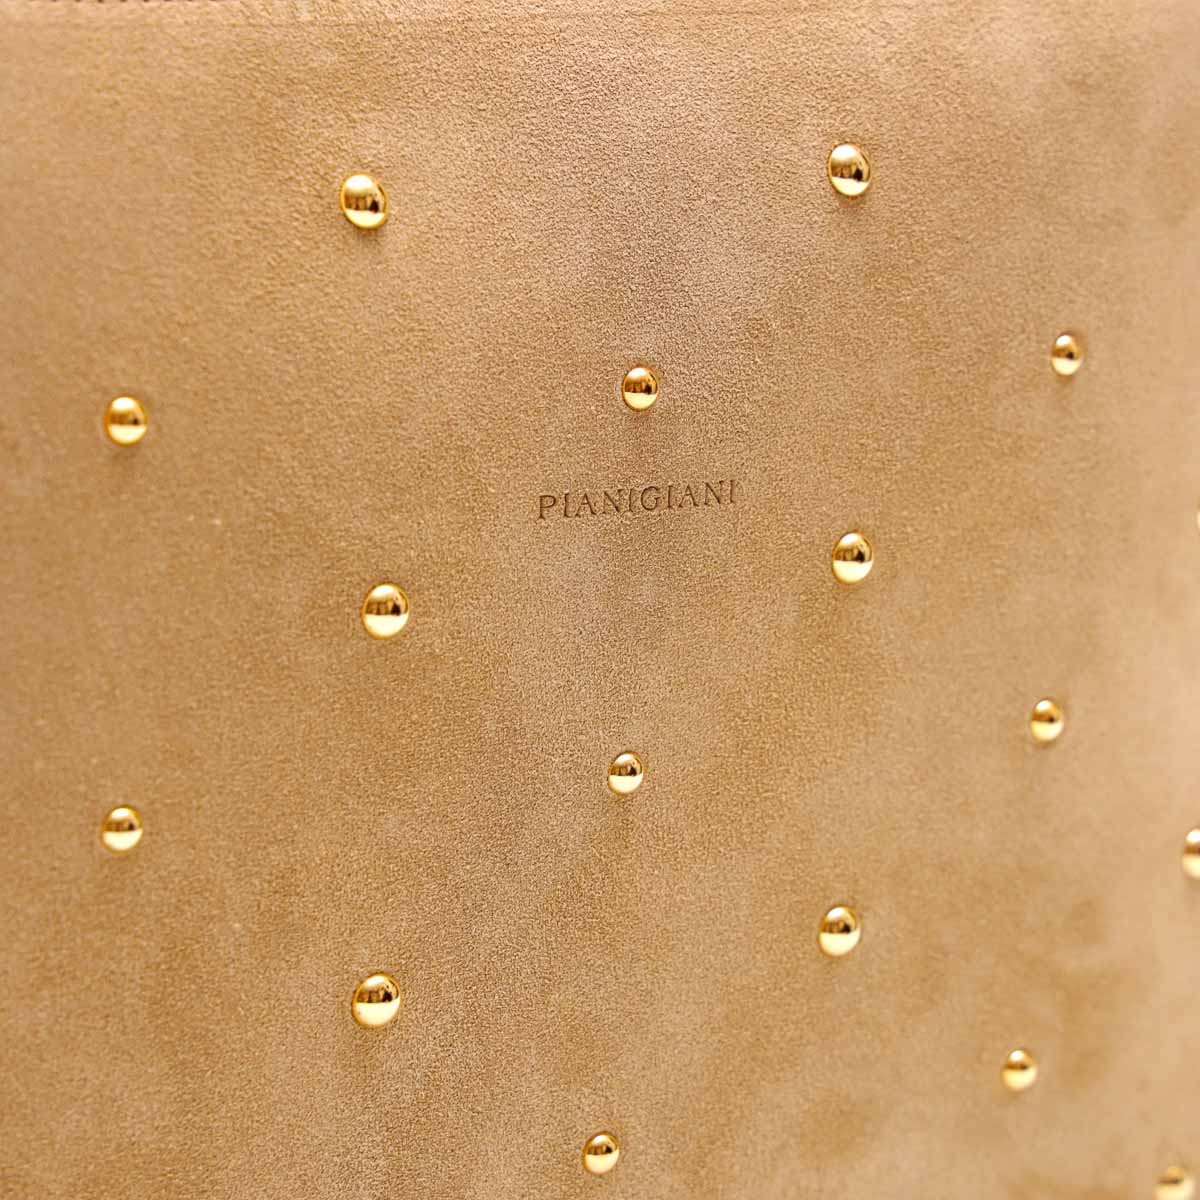 Rose bag, borsa a mano in pelle scamosciata beige con borchie decorative color oro, prodotta da pianigiani bags